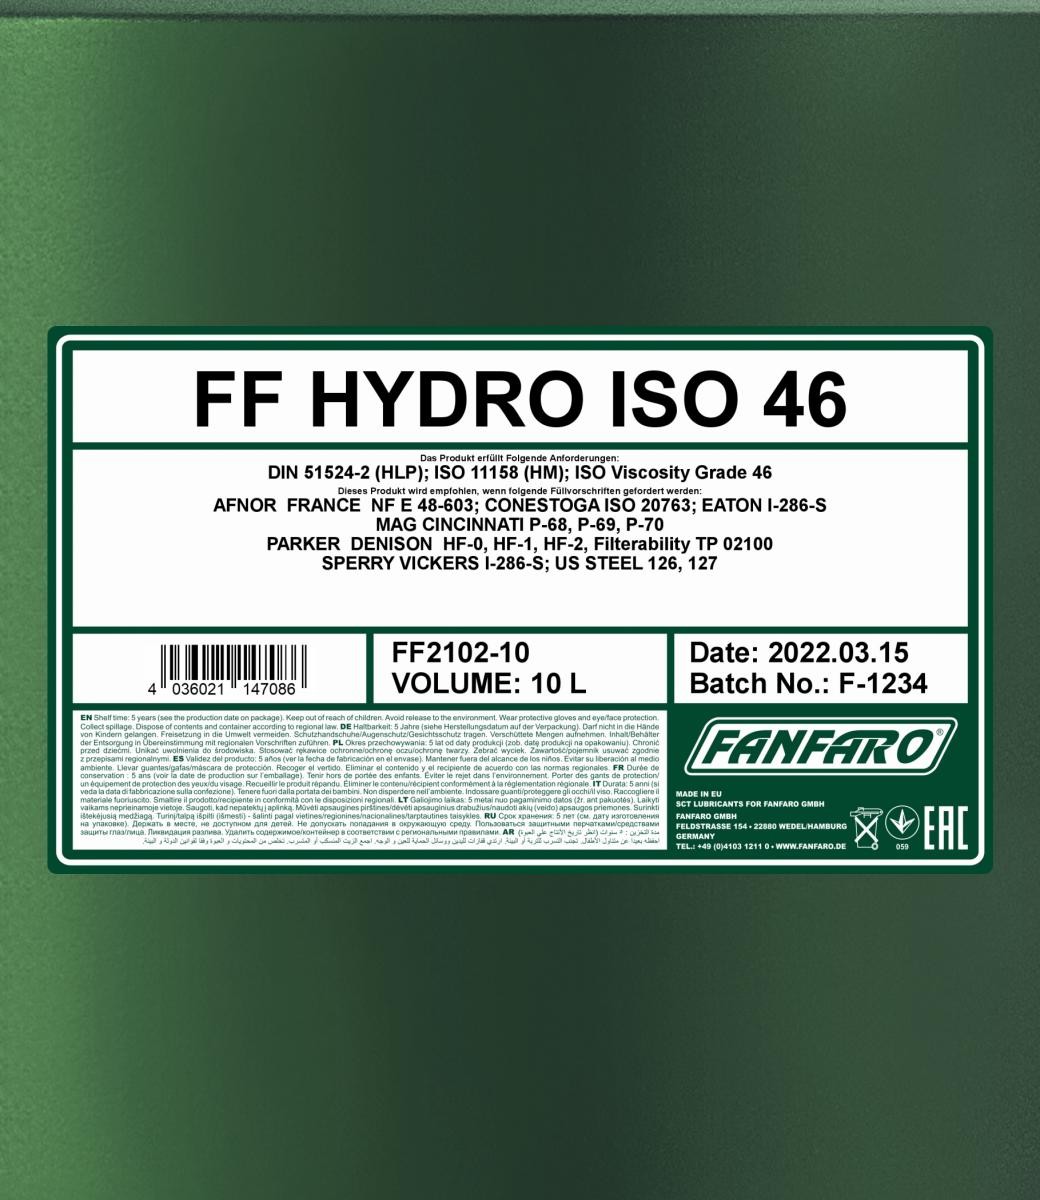 FANFARO Hydrauliköl FF2102-10